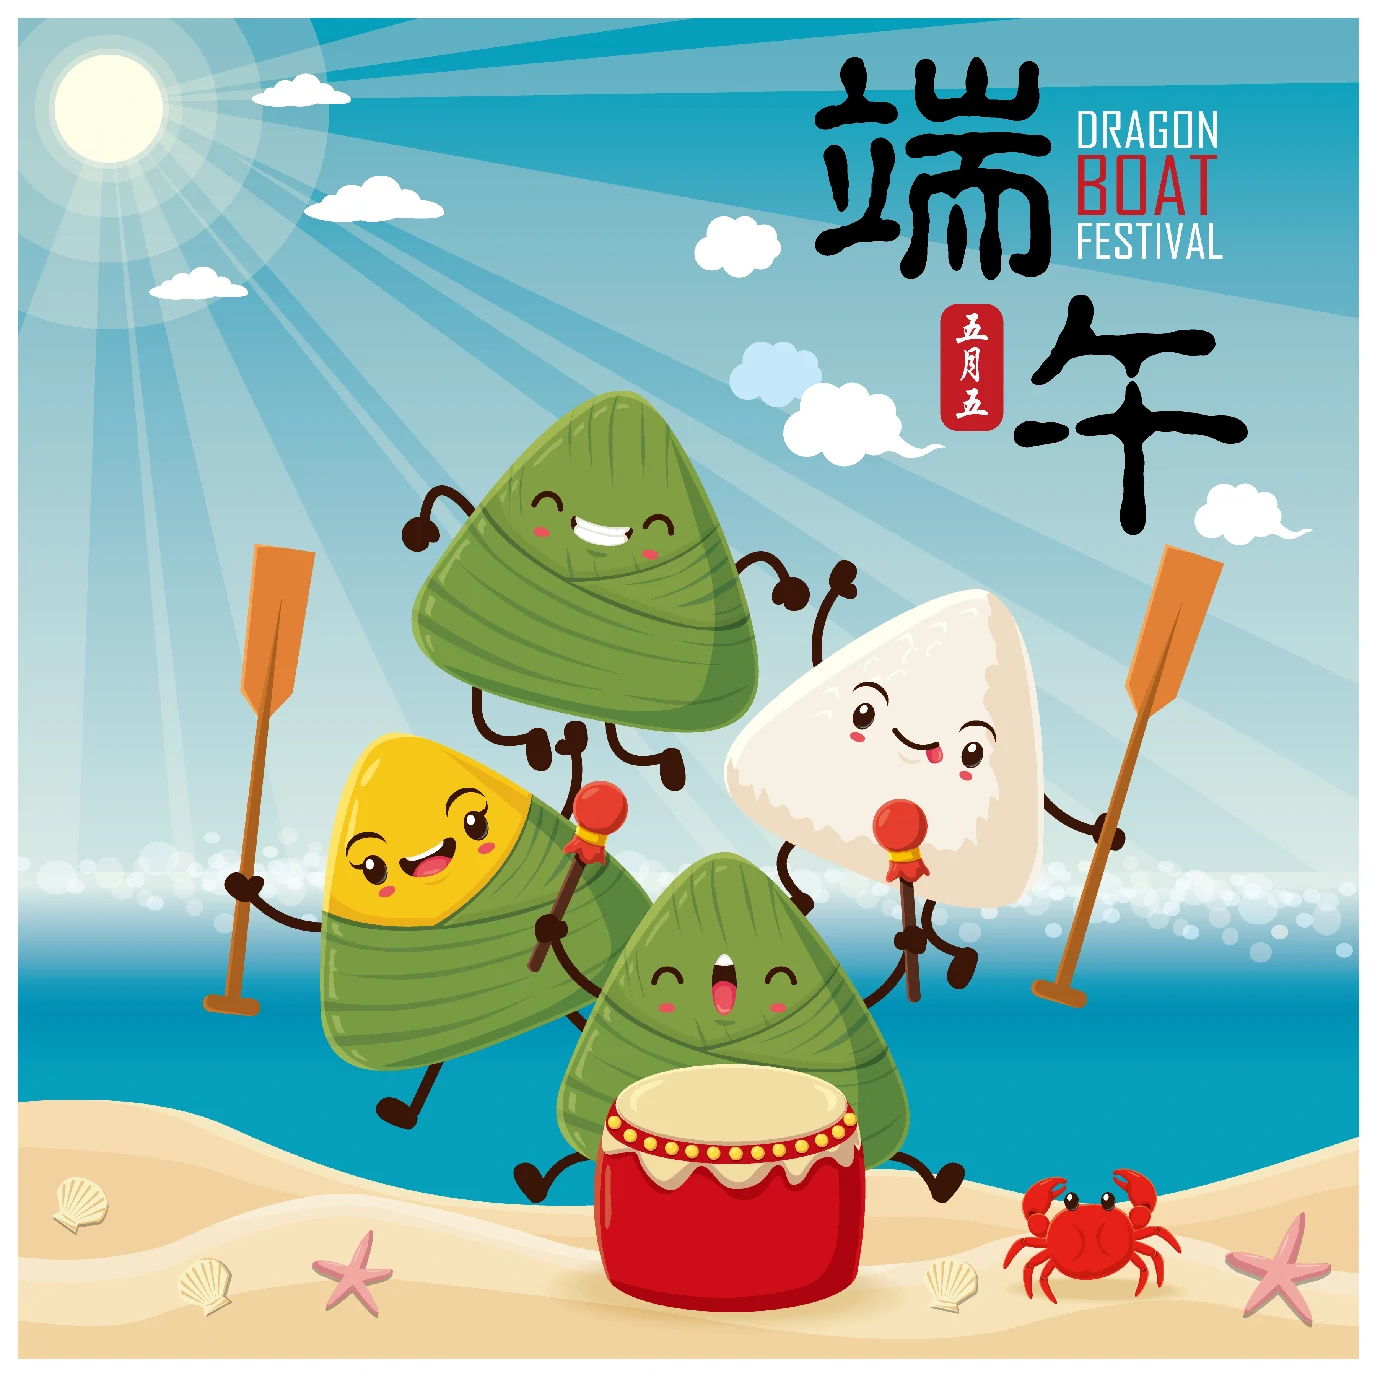 中国传统节日卡通手绘端午节赛龙舟粽子插画海报AI矢量设计素材【035】